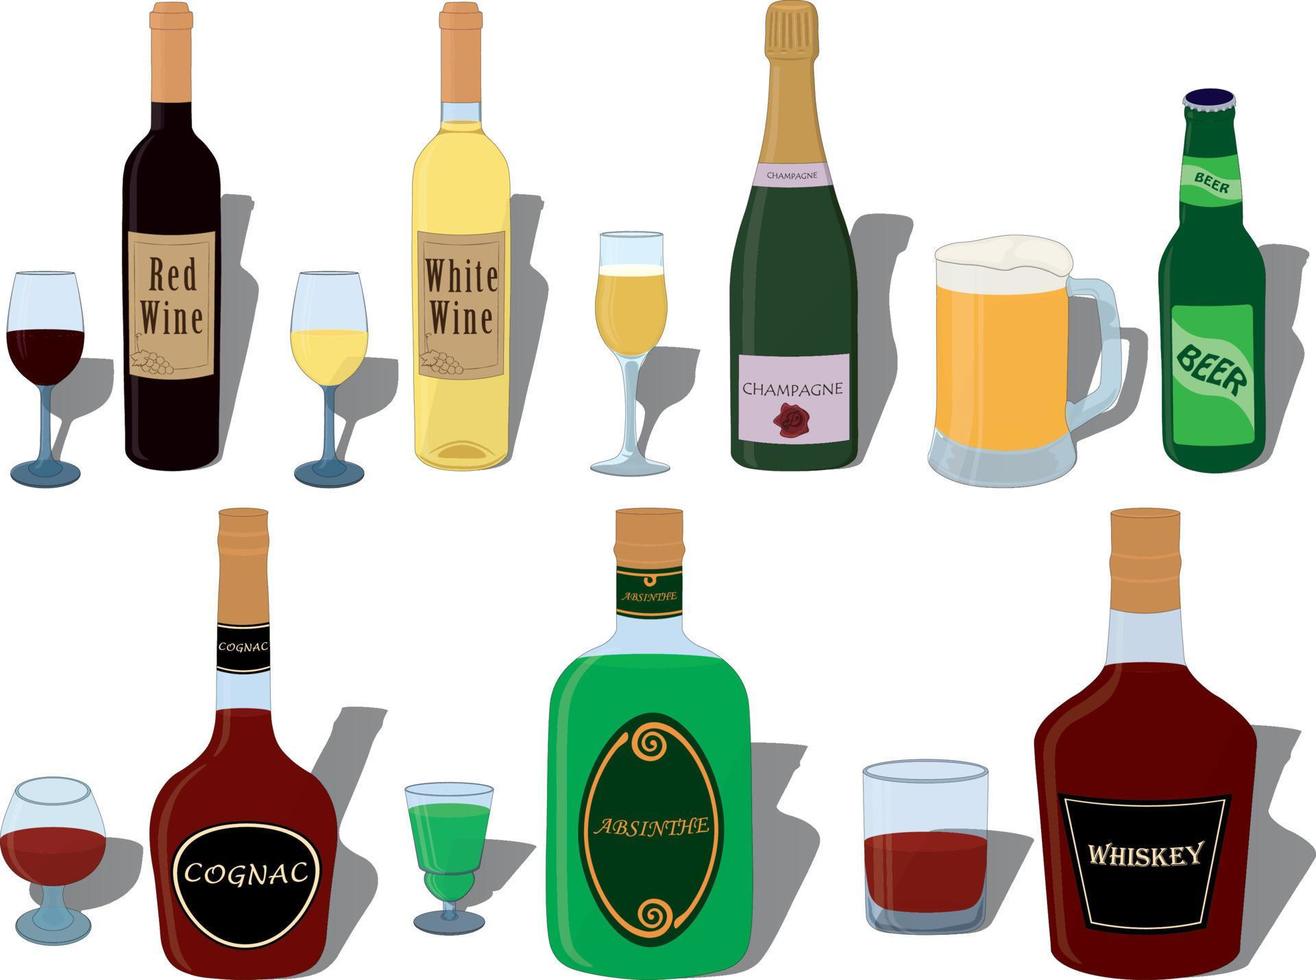 alkoholgetränke, flaschen und spezielle gläser paare sammlungsvektorillustration vektor